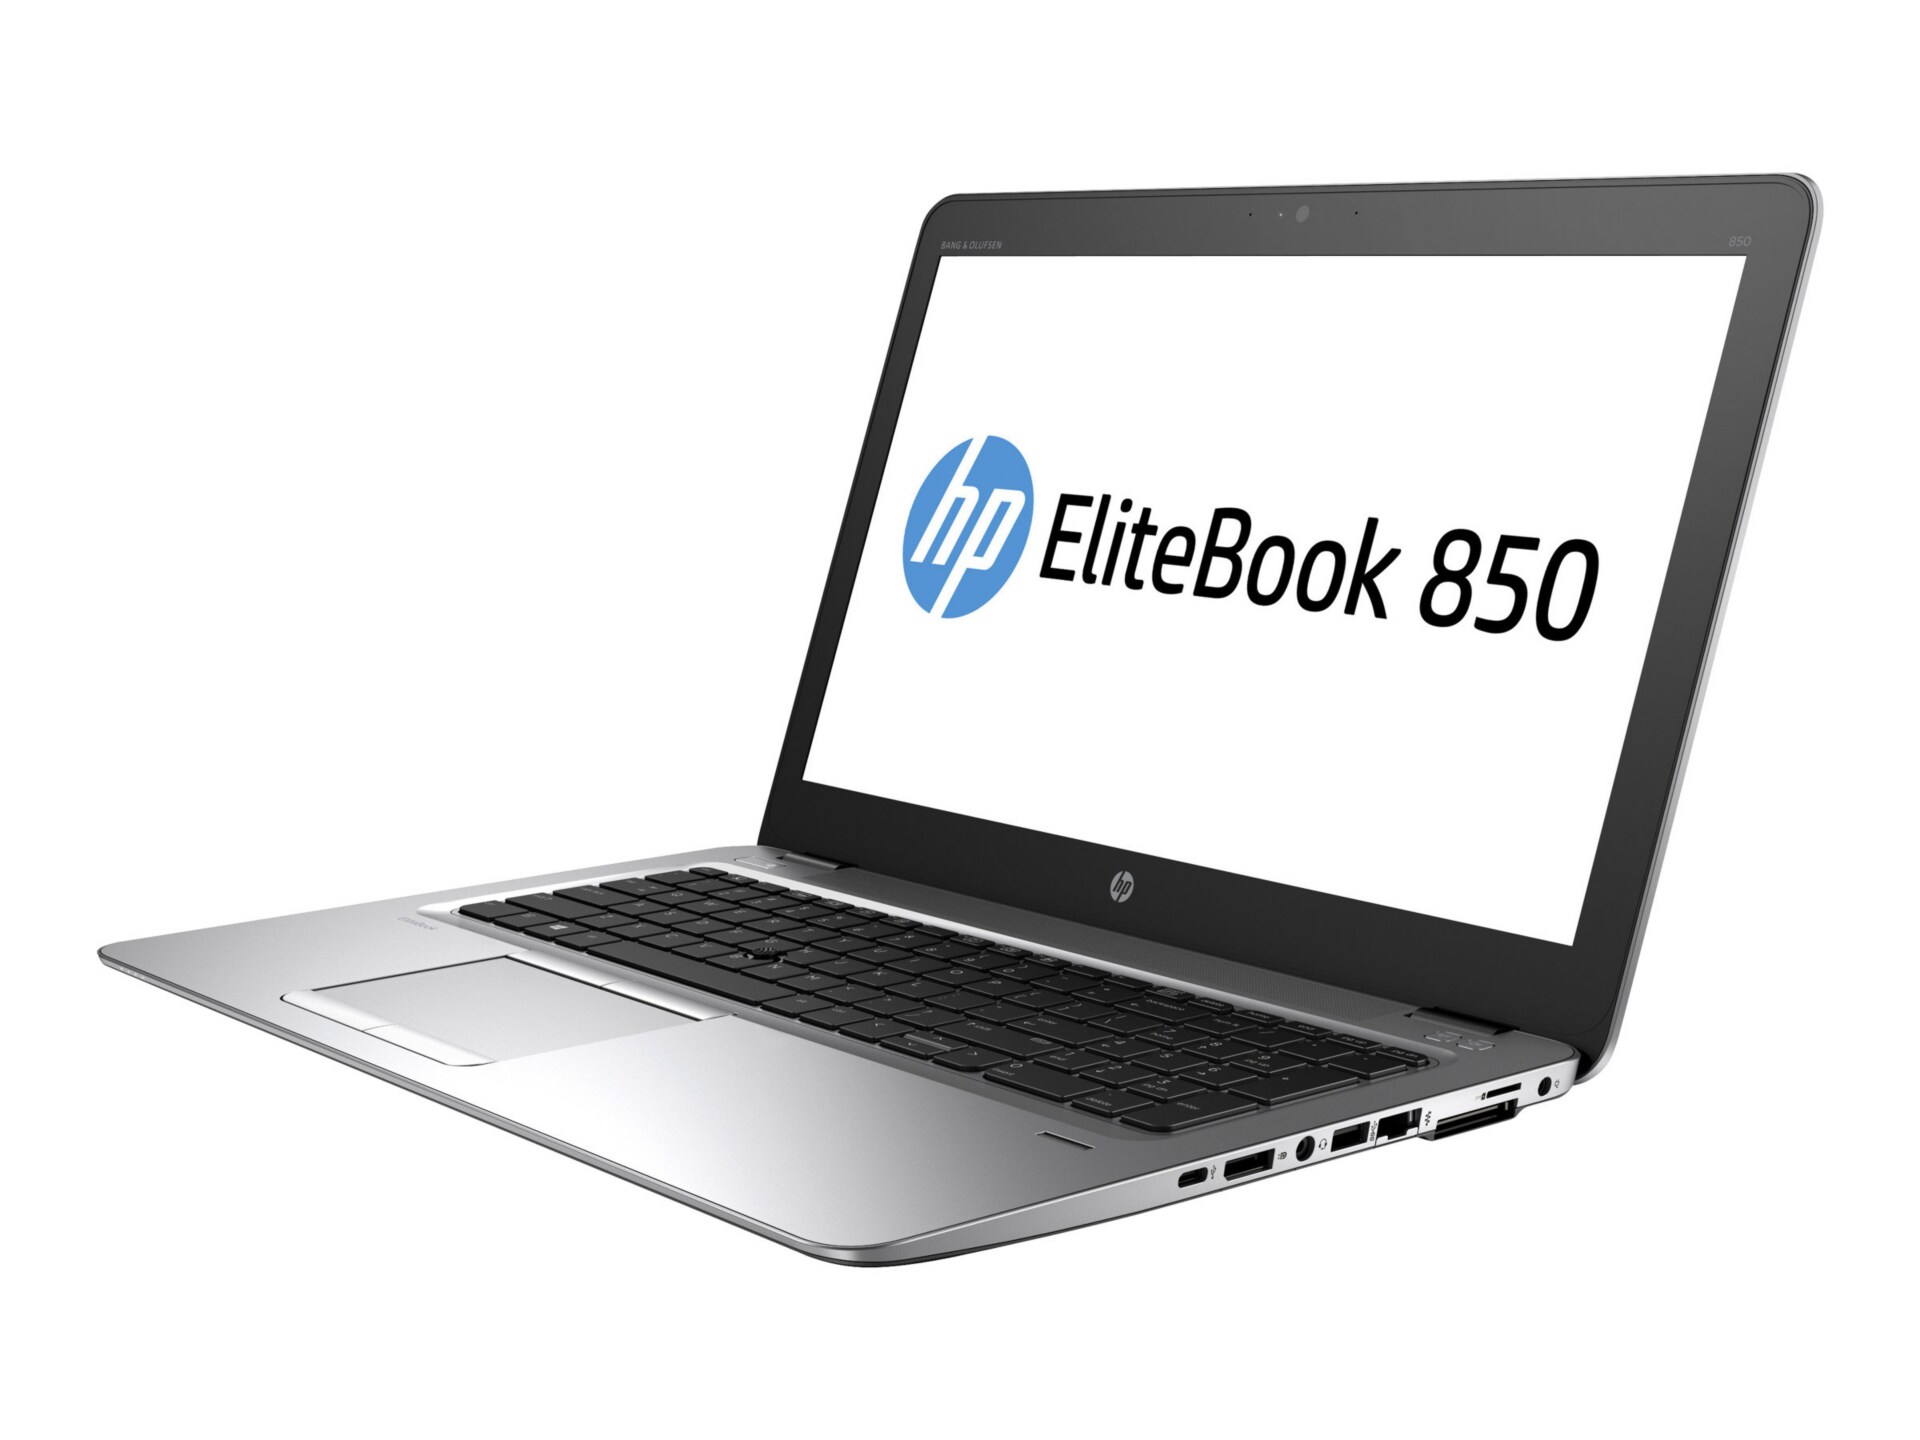 HP EliteBook 850 G3 - 15.6" - Core i7 6600U - 16 GB RAM - 512 GB SSD - US